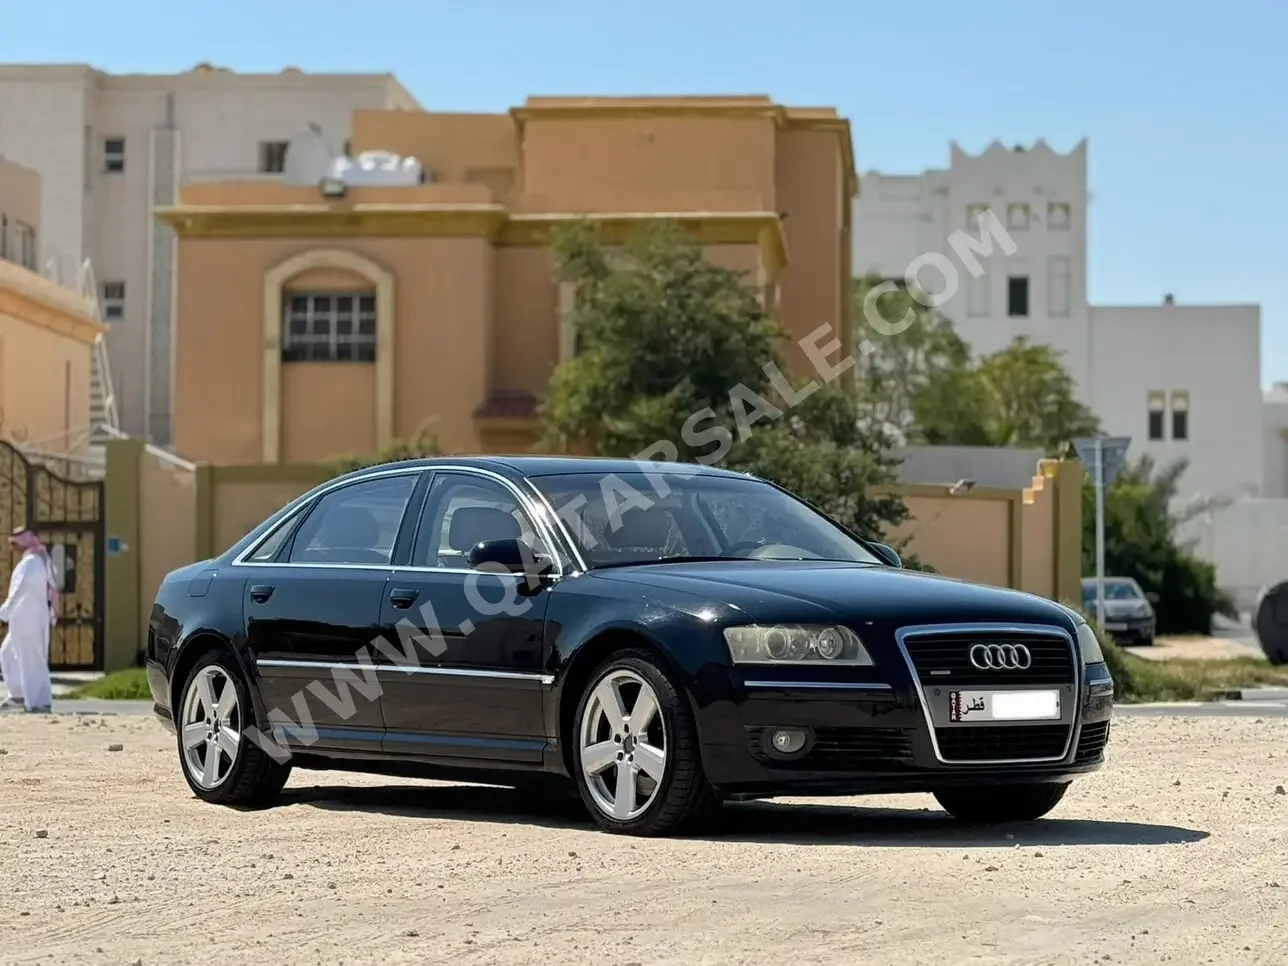 Audi  A8  L  2006  Automatic  7,000 Km  8 Cylinder  All Wheel Drive (AWD)  Sedan  Black